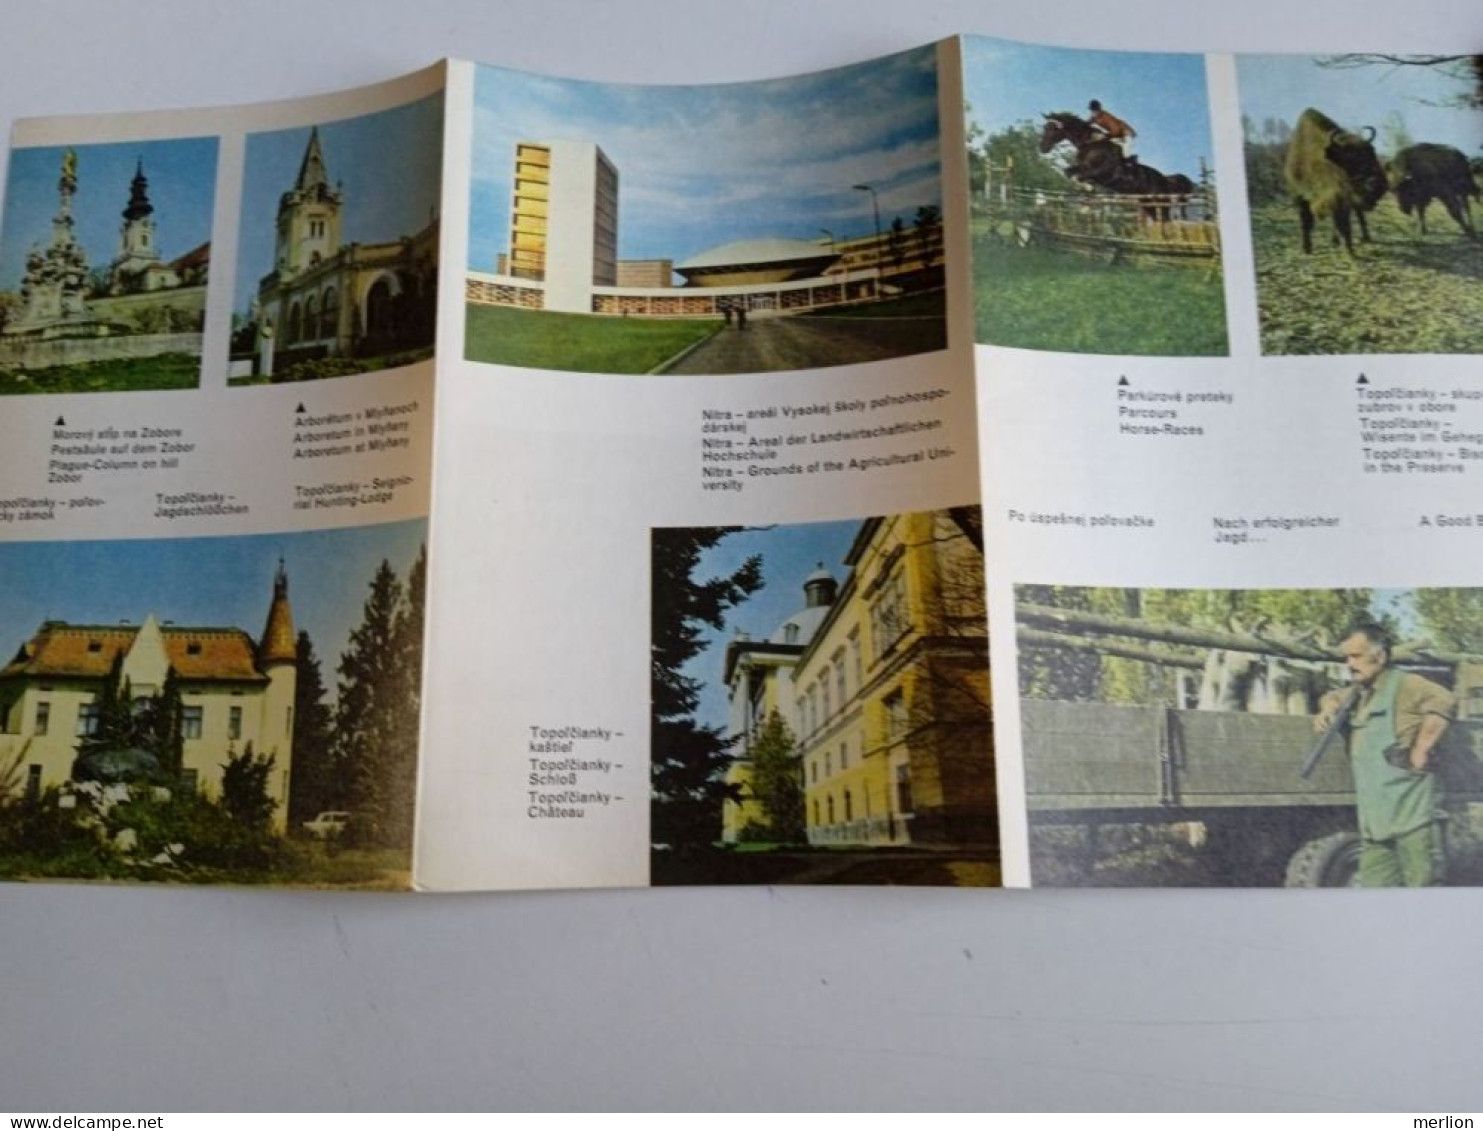 D203053    Czechoslovakia - Tourism Brochure - Slovakia  - NITRA     Ca 1960 - Tourism Brochures